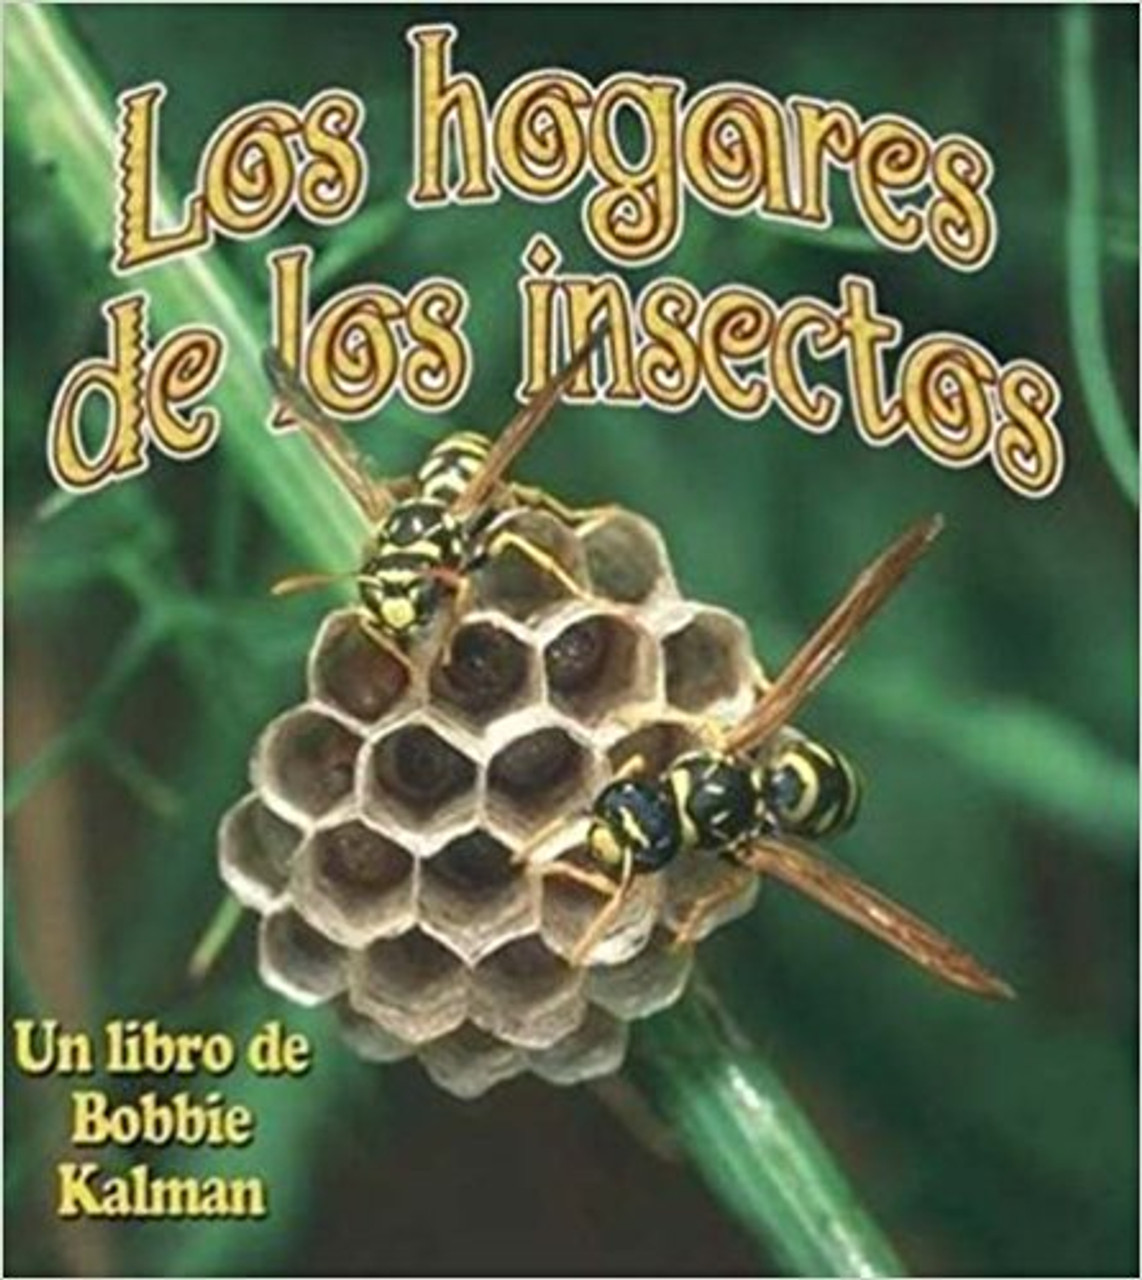 Los Hogares de los Insectos by Bobbie Kalman